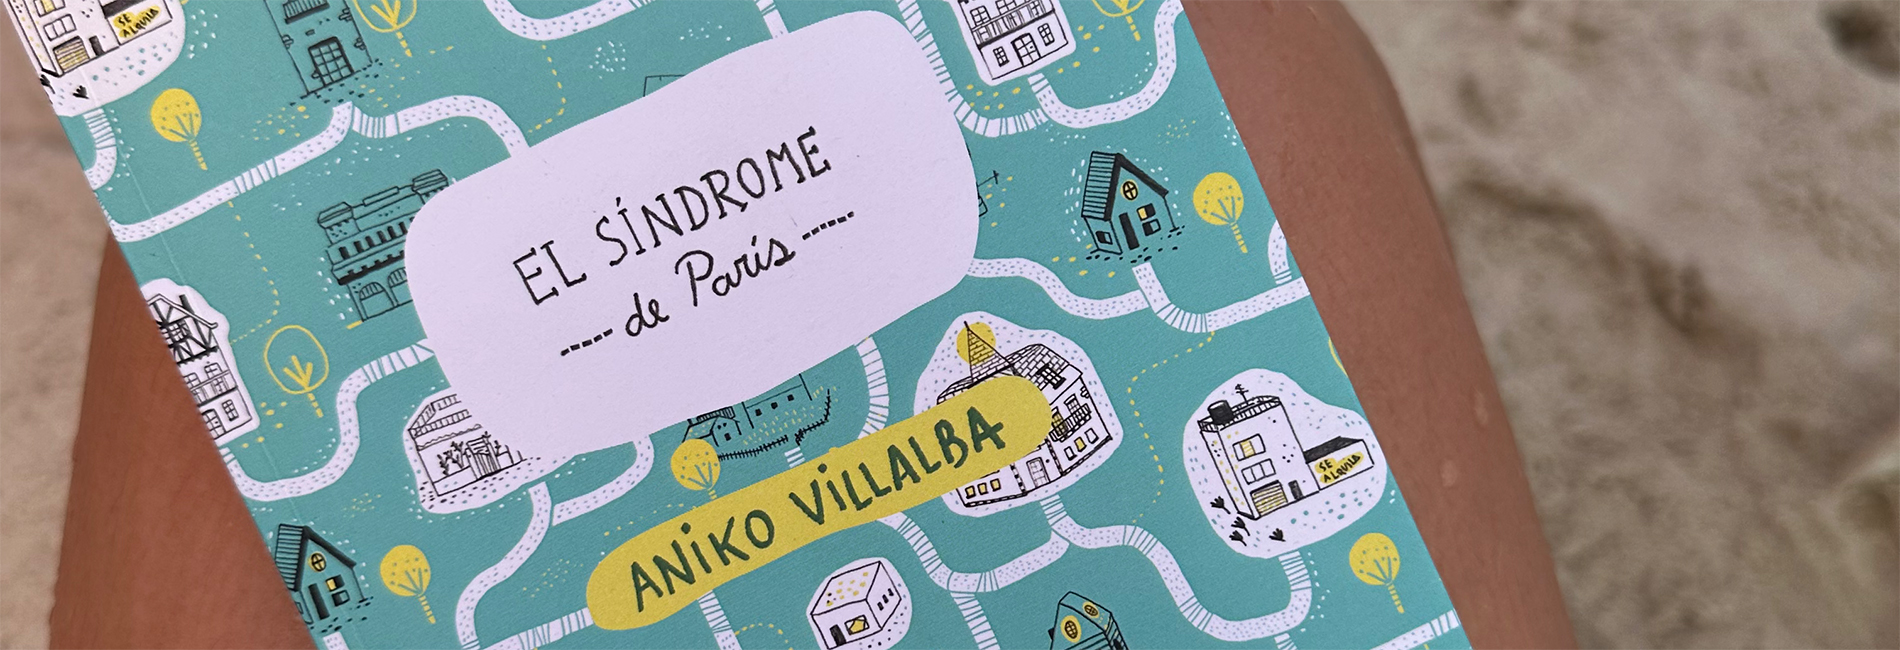 El síndrome de París de Aniko Villalba